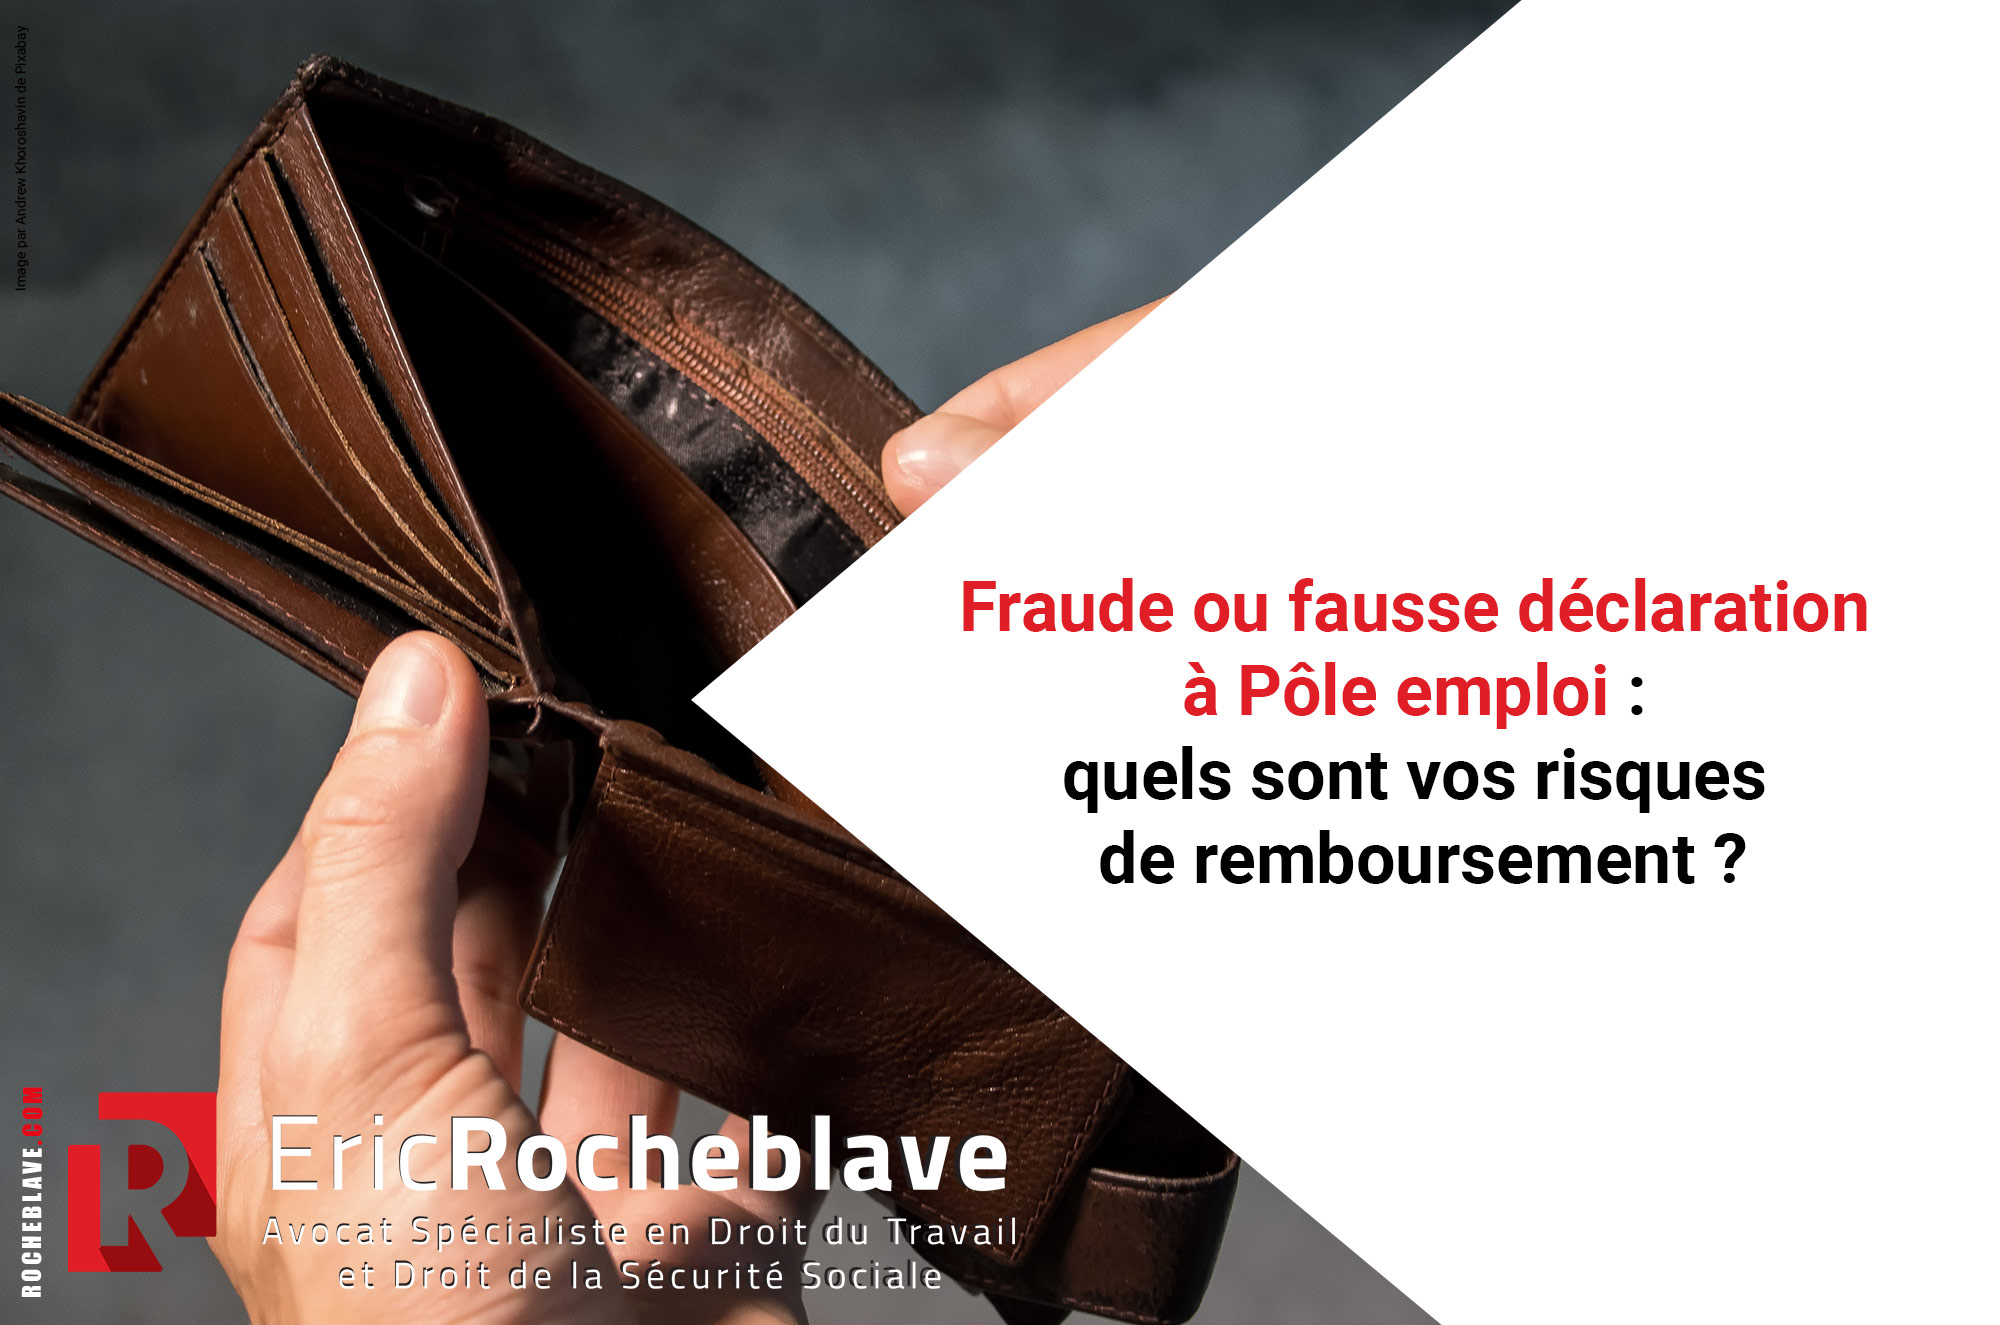 Fraude ou fausse déclaration à Pôle emploi : quels sont vos risques de remboursement ?